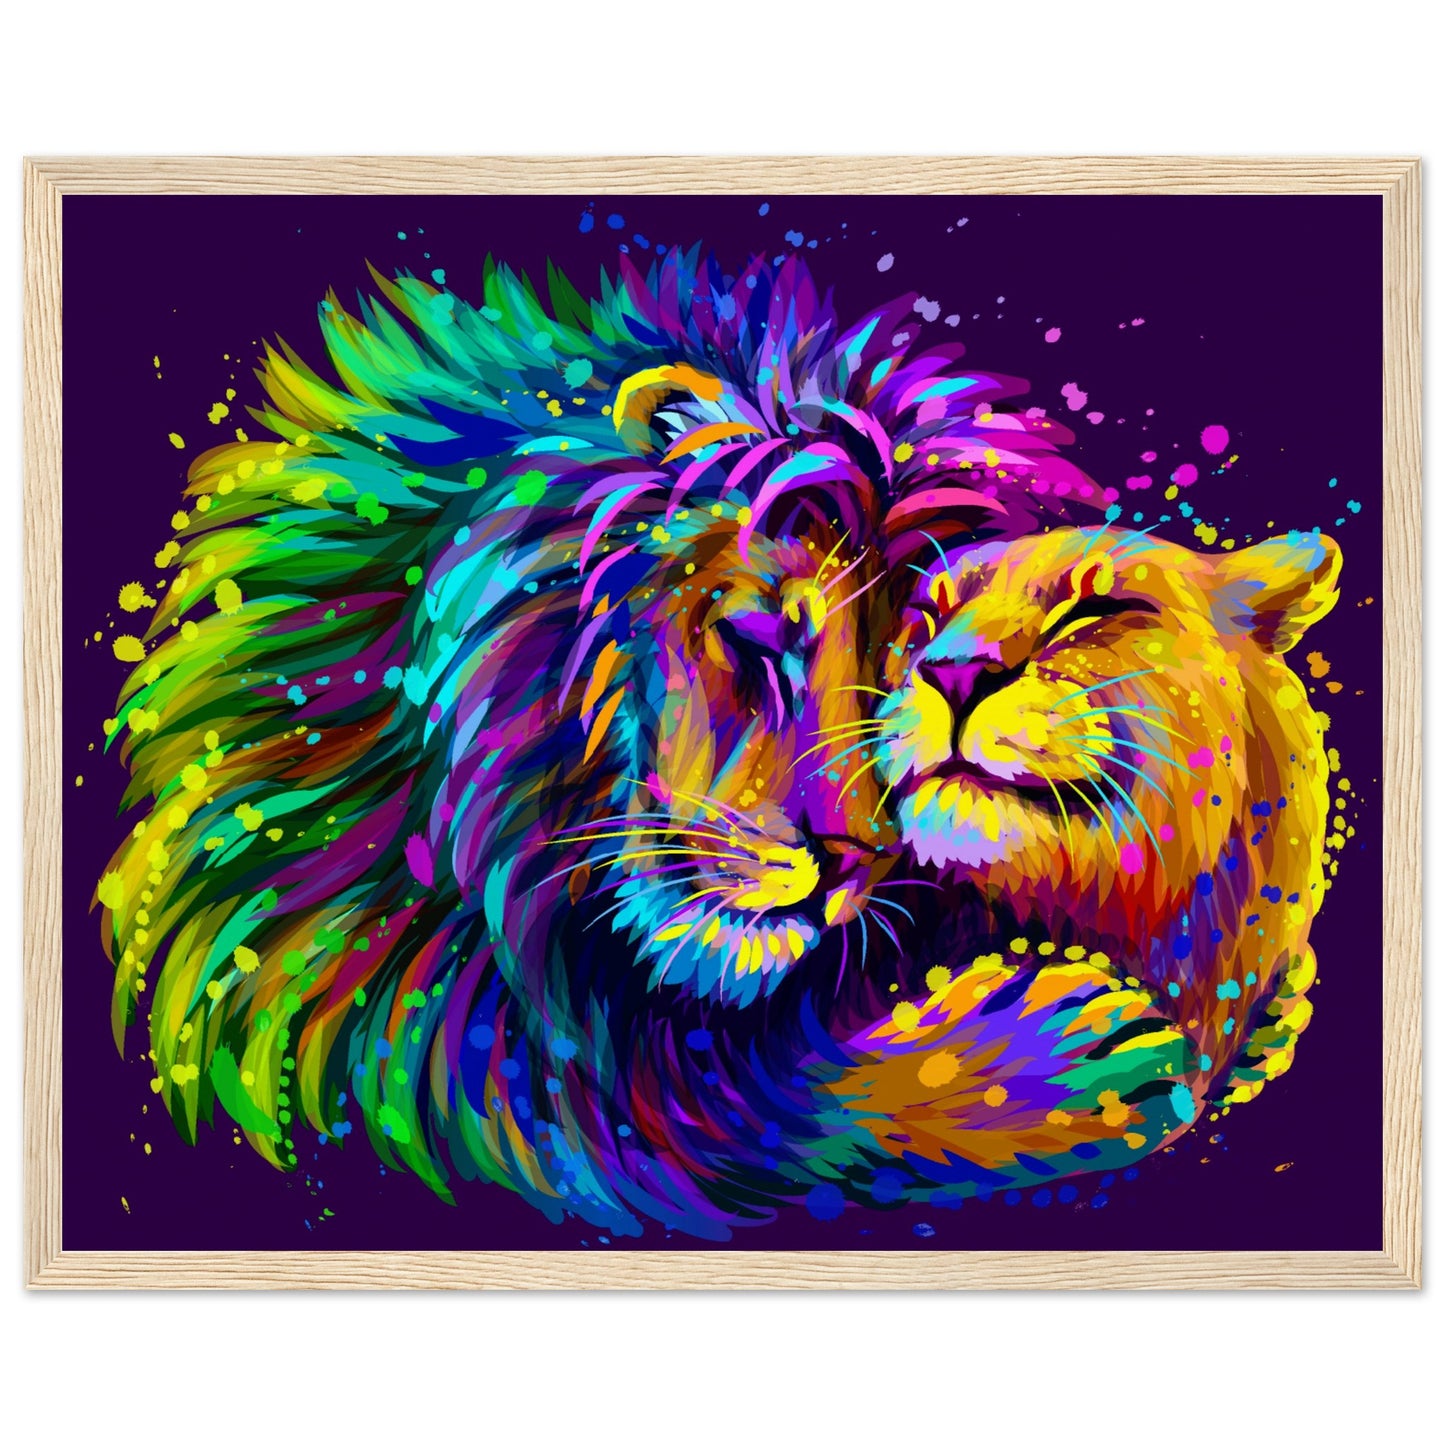 Lion embraces a lioness